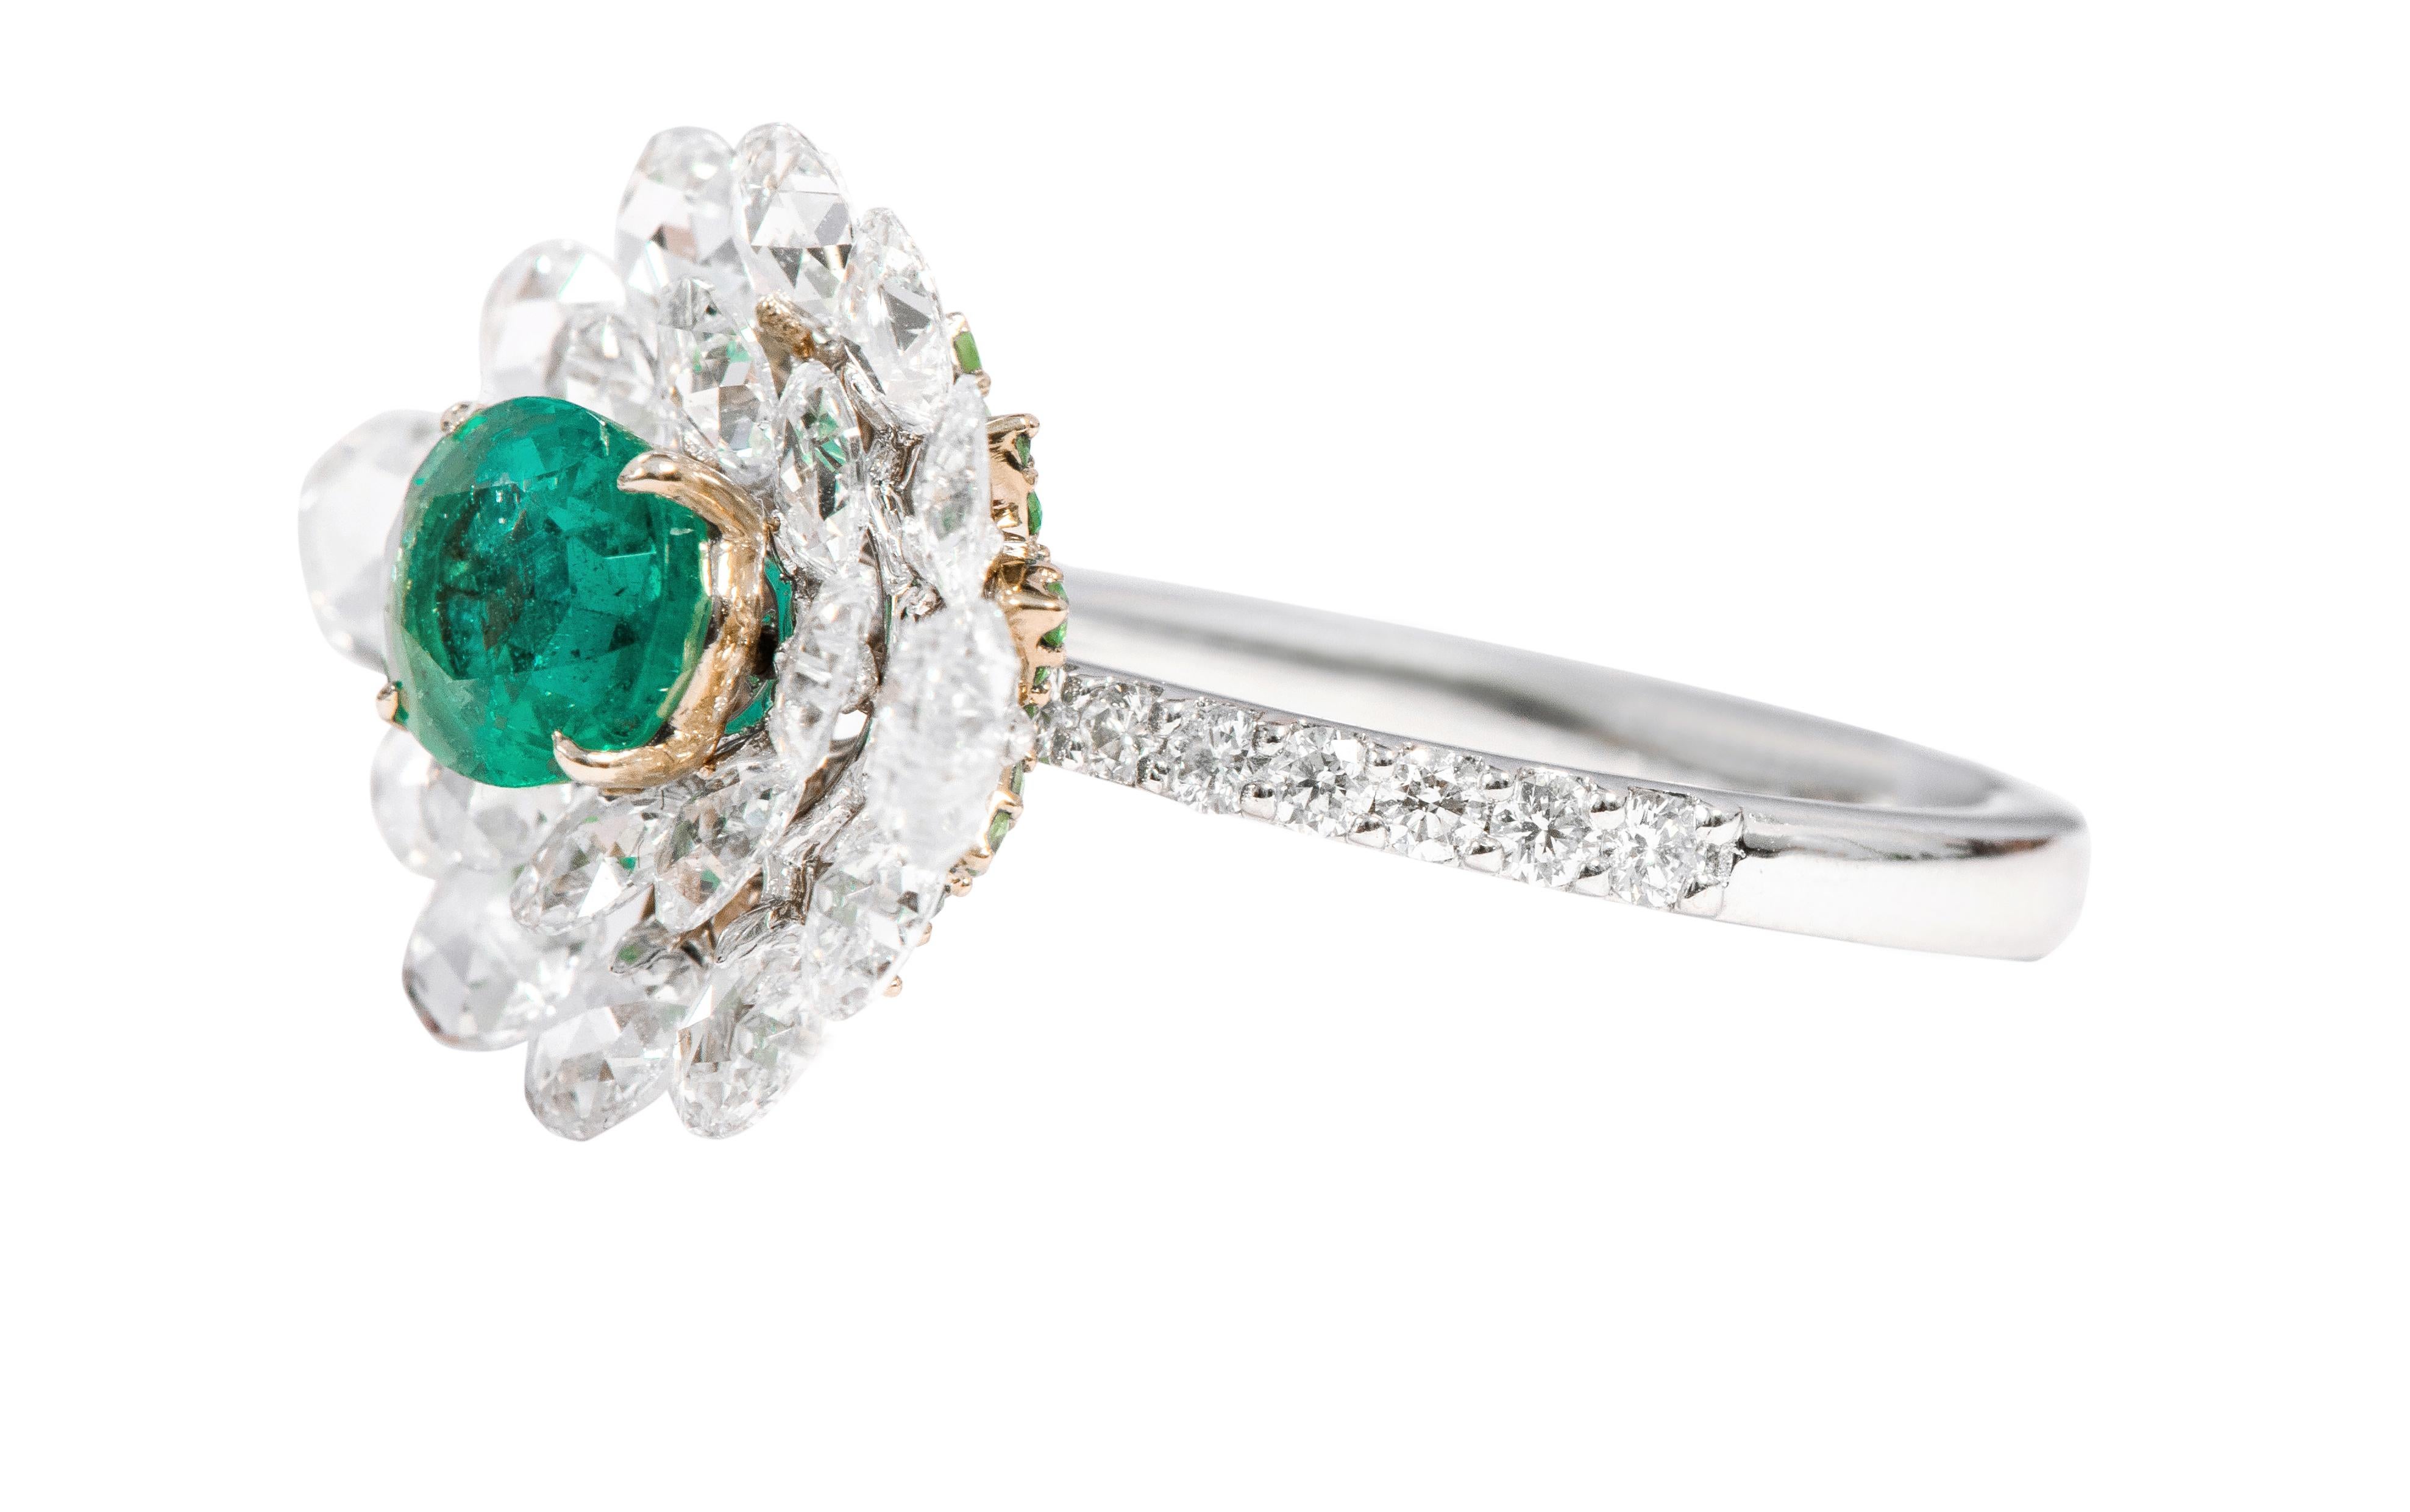 18 Karat Weißgold 1,10 Karat natürlicher Smaragd und Diamant-Cluster-Ring im Rosenschliff

Dieser tadellose Solitär-Cocktailring mit einem leuchtend grünen Smaragd und einem Diamanten im Rosenschliff ist faszinierend. Der Ring zeichnet sich durch